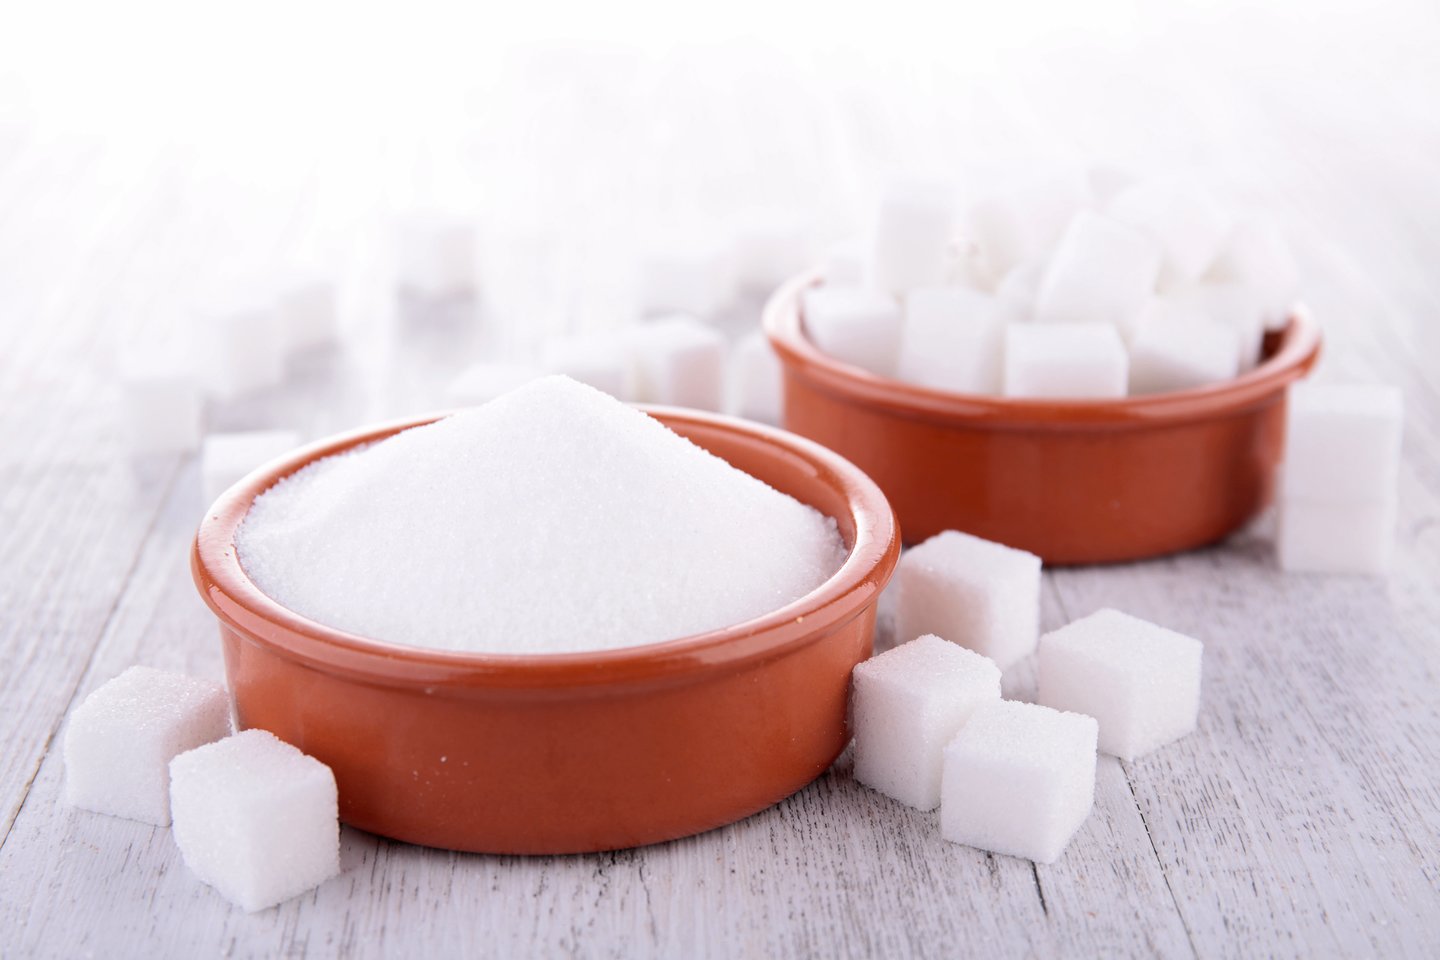 Dažnam kyla klausimas, ypač besilaikantiems dietos, ar dirbtiniai saldikliai yra sveikesni už cukrų.<br>123rf nuotr.